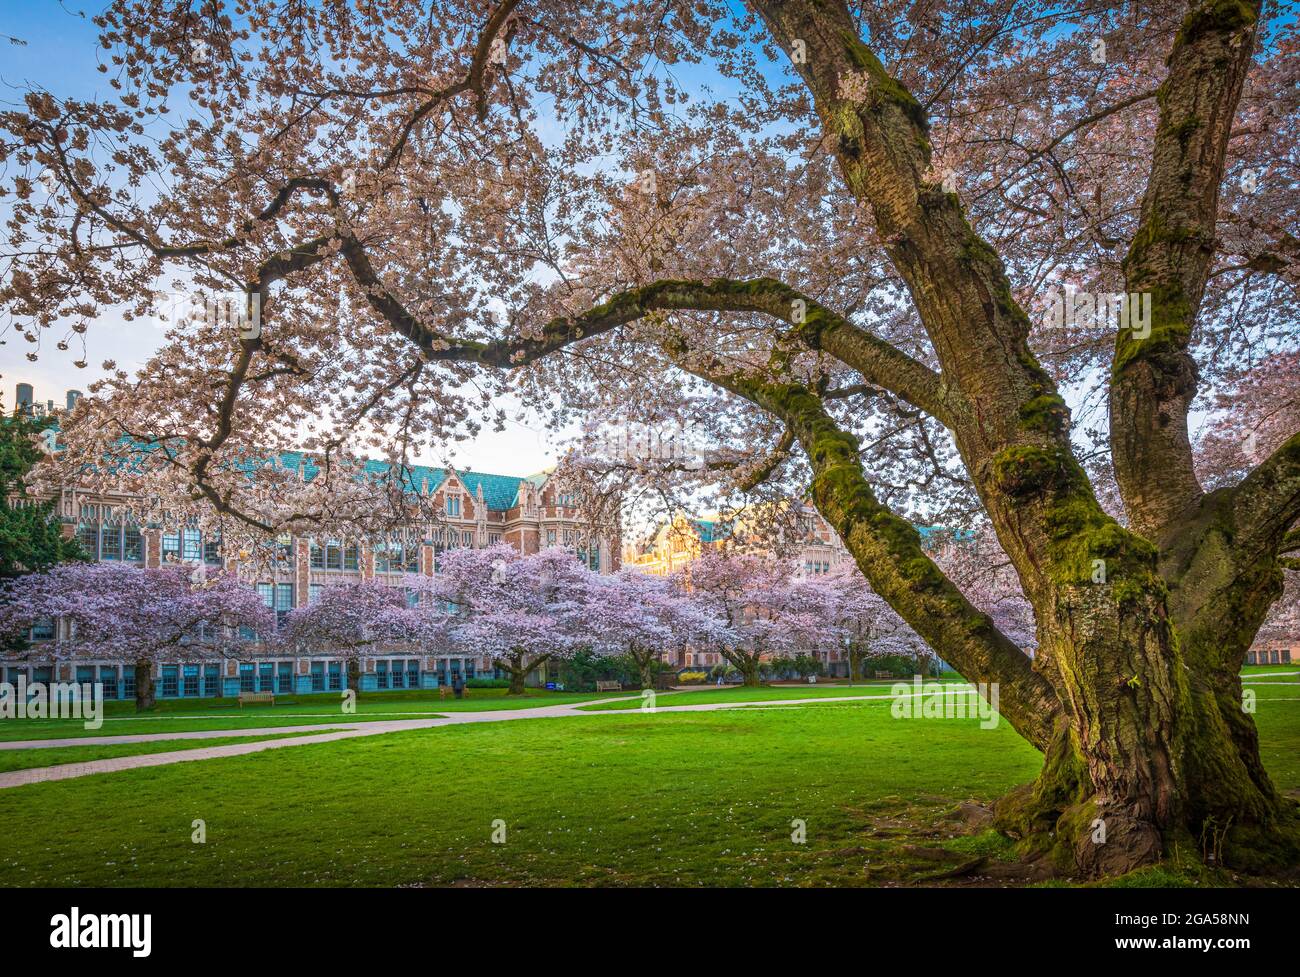 Die University of Washington (allgemein als Washington oder UDub bezeichnet) ist eine öffentliche Forschungsuniversität in Seattle, Washington, USA Stockfoto